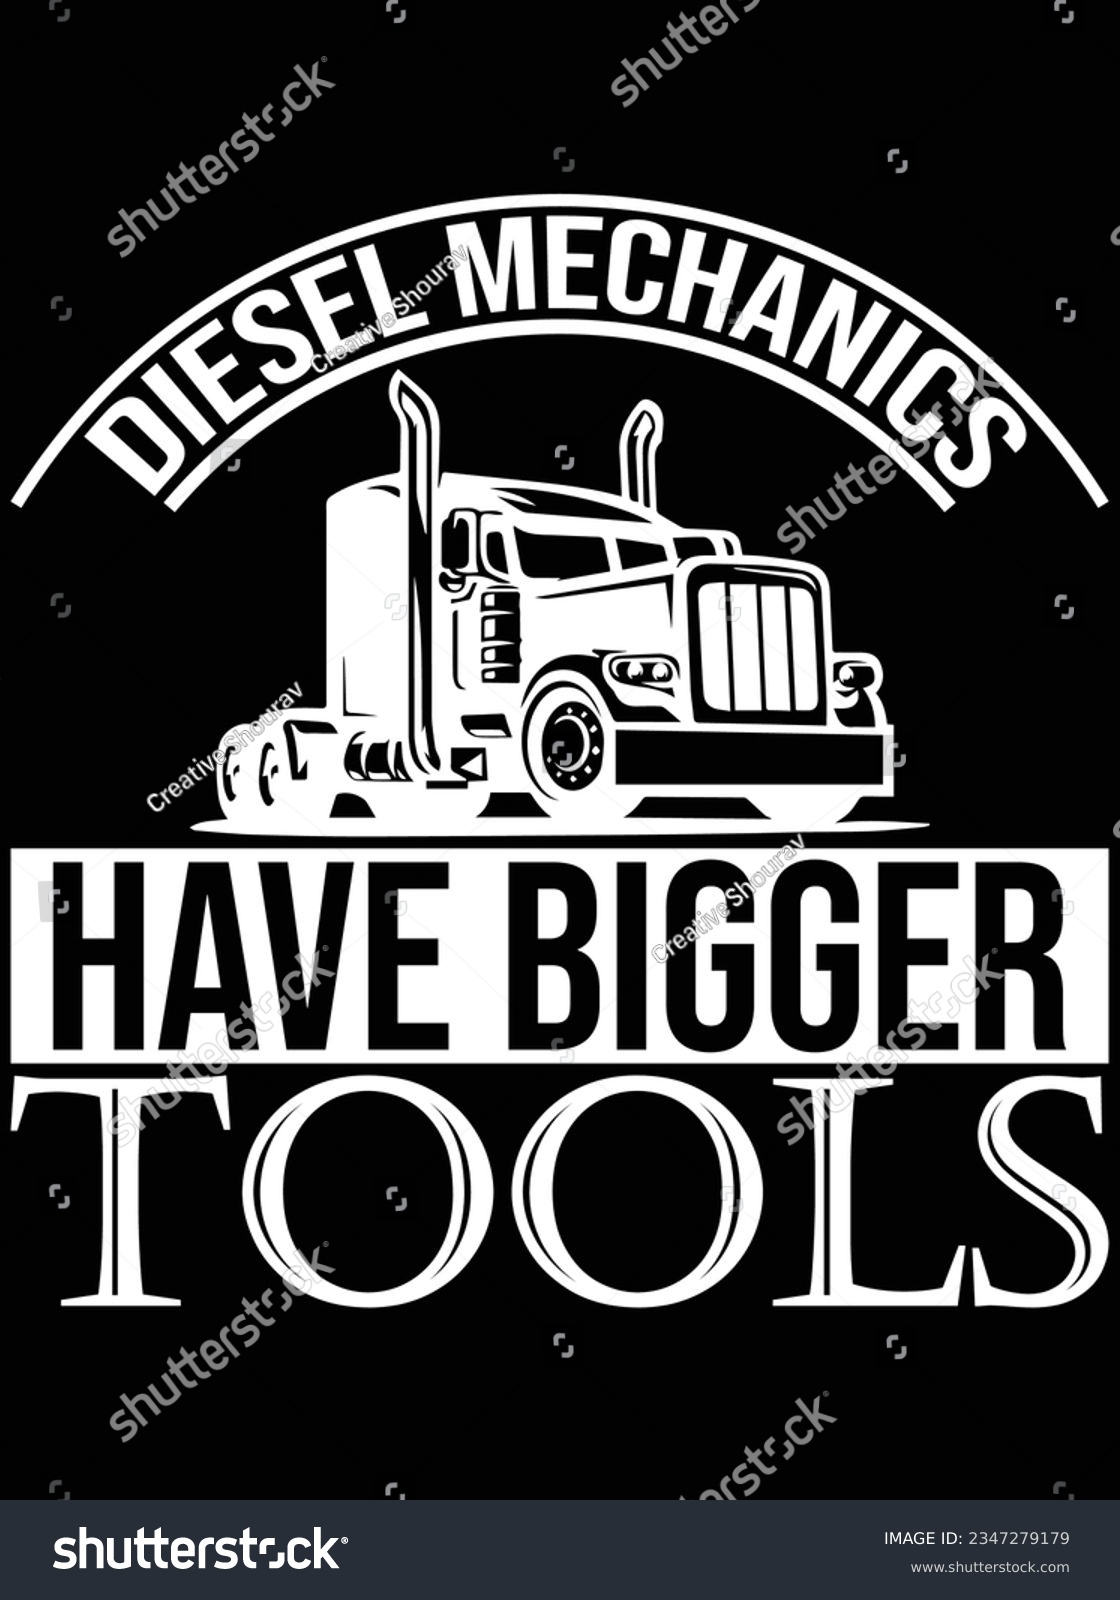 SVG of Diesel mechanics have bigger tools vector art design, eps file. design file for t-shirt. SVG, EPS cuttable design file svg